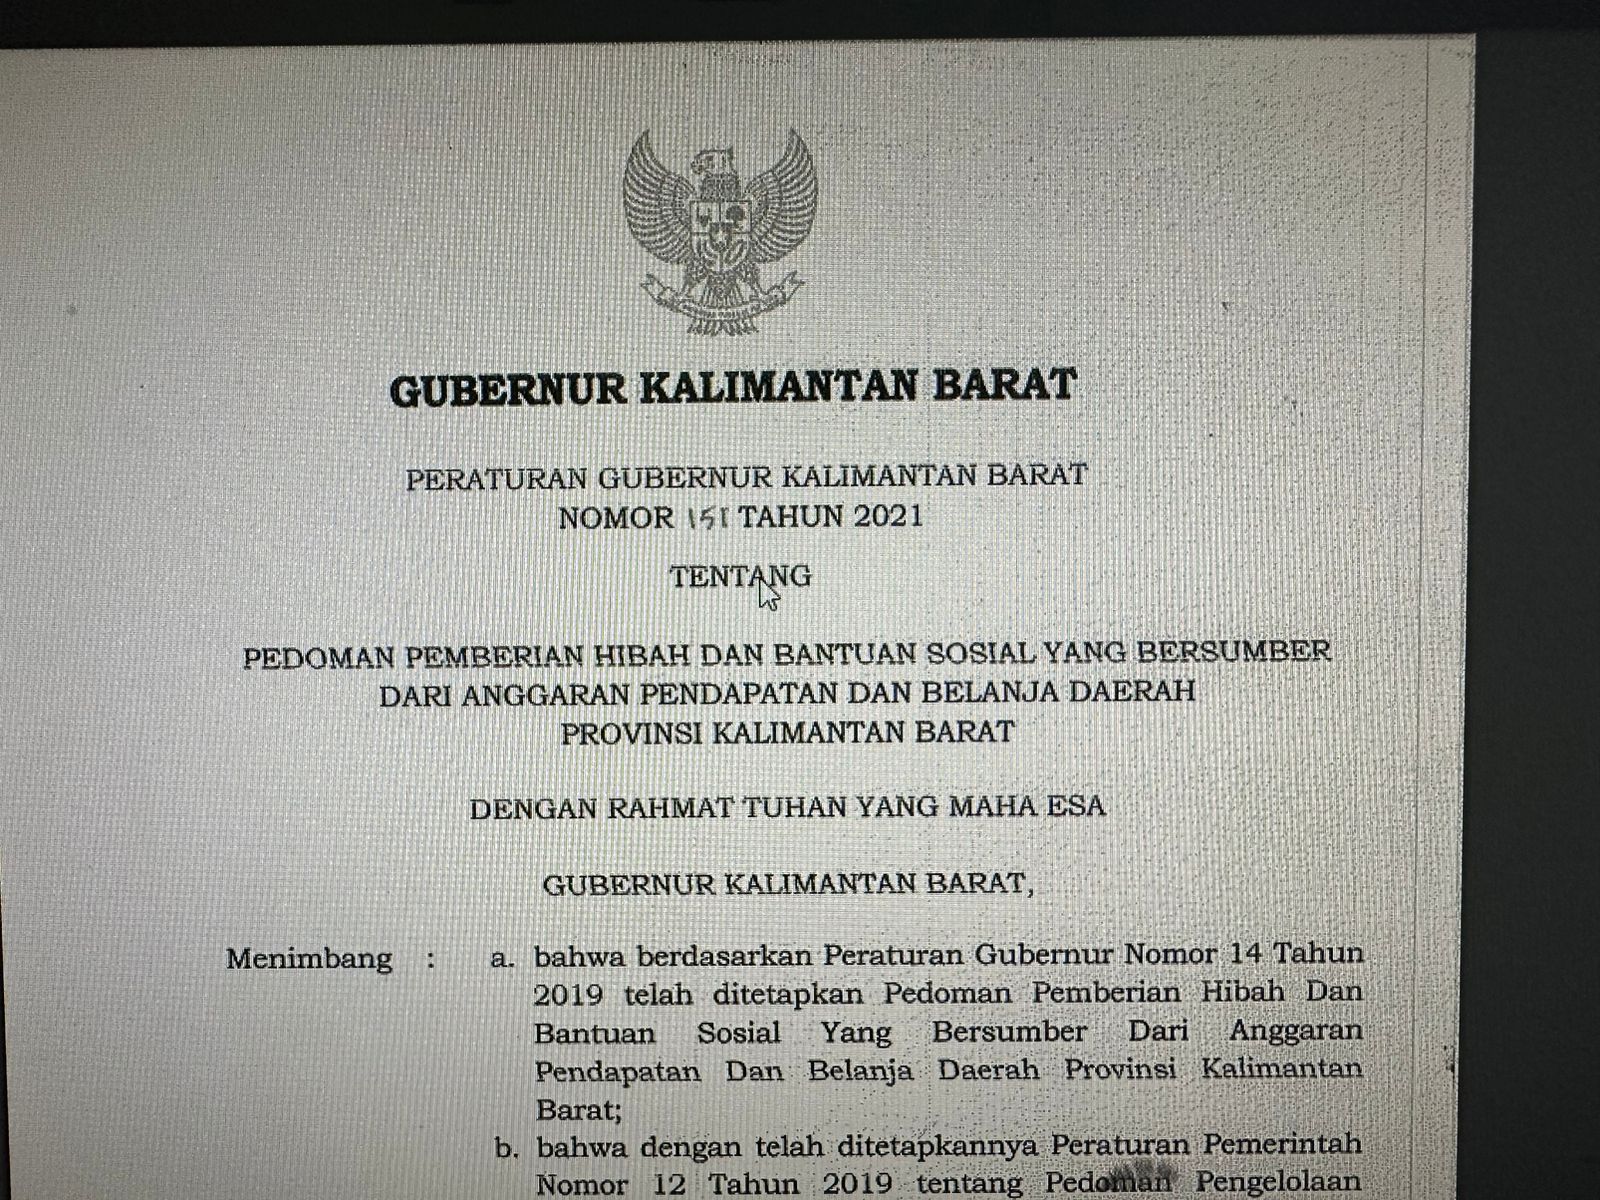 Peraturan Gubernur Kalimantan Barat Nomor 151 Tahun 2021 tentang Pedoman Pemberian Hibah dan Bantuan Sosial yang Bersumber dari Anggaran Pendapatan dan Belanja Daerah Provinsi Kalimantan Barat.